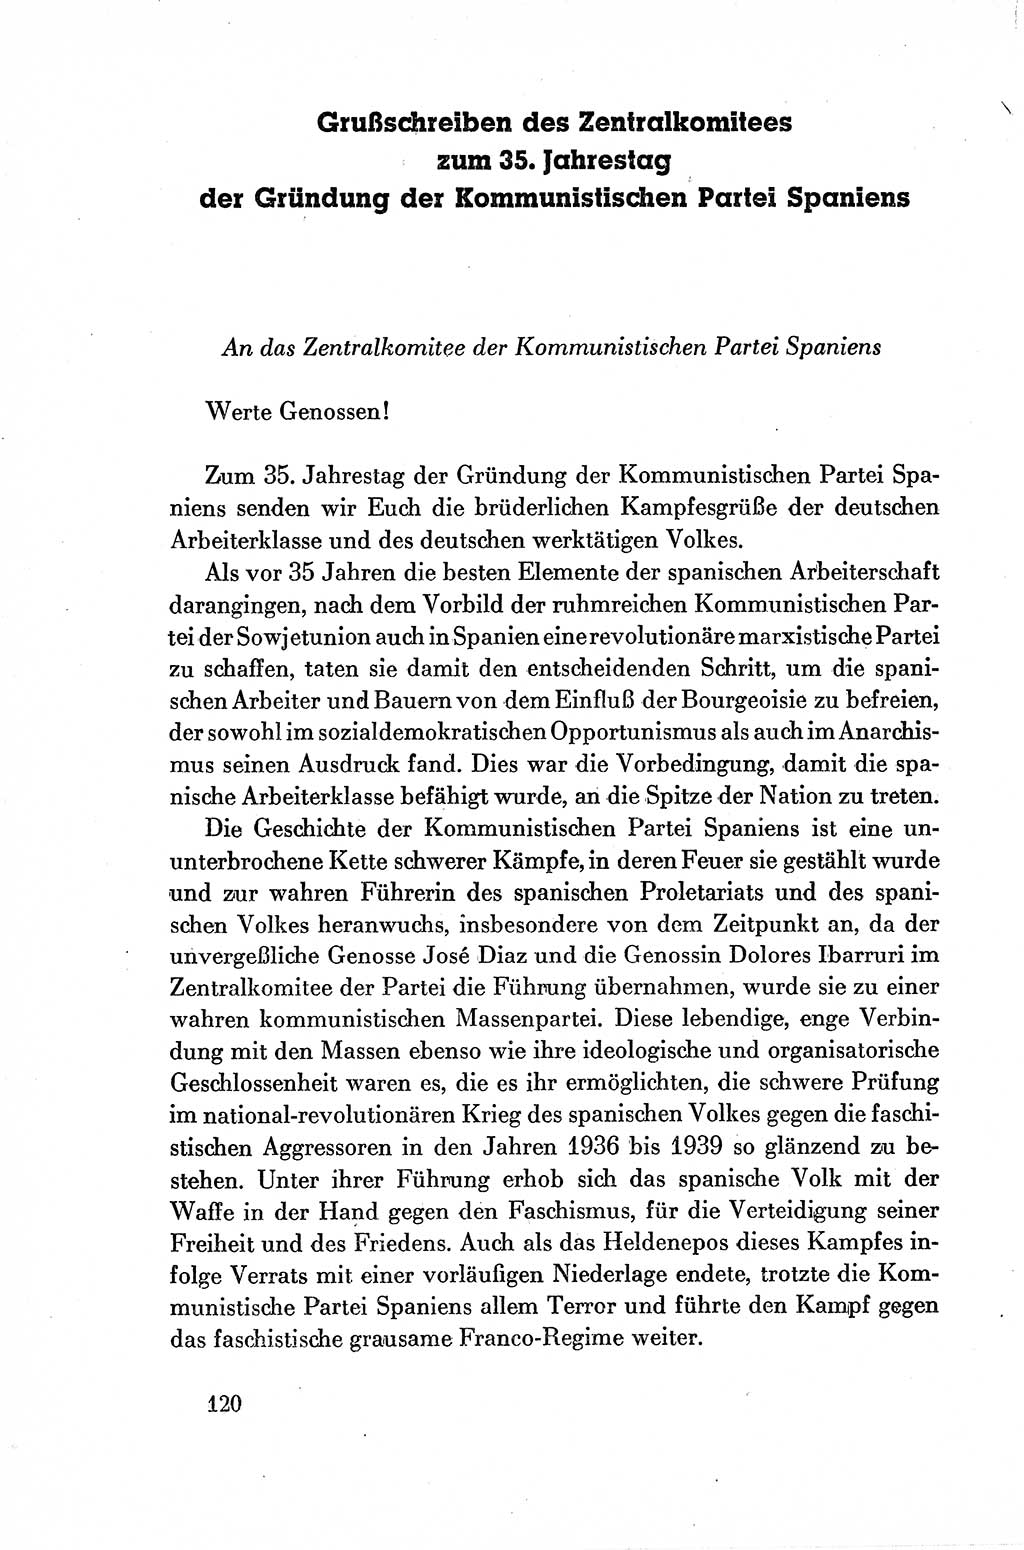 Dokumente der Sozialistischen Einheitspartei Deutschlands (SED) [Deutsche Demokratische Republik (DDR)] 1954-1955, Seite 120 (Dok. SED DDR 1954-1955, S. 120)